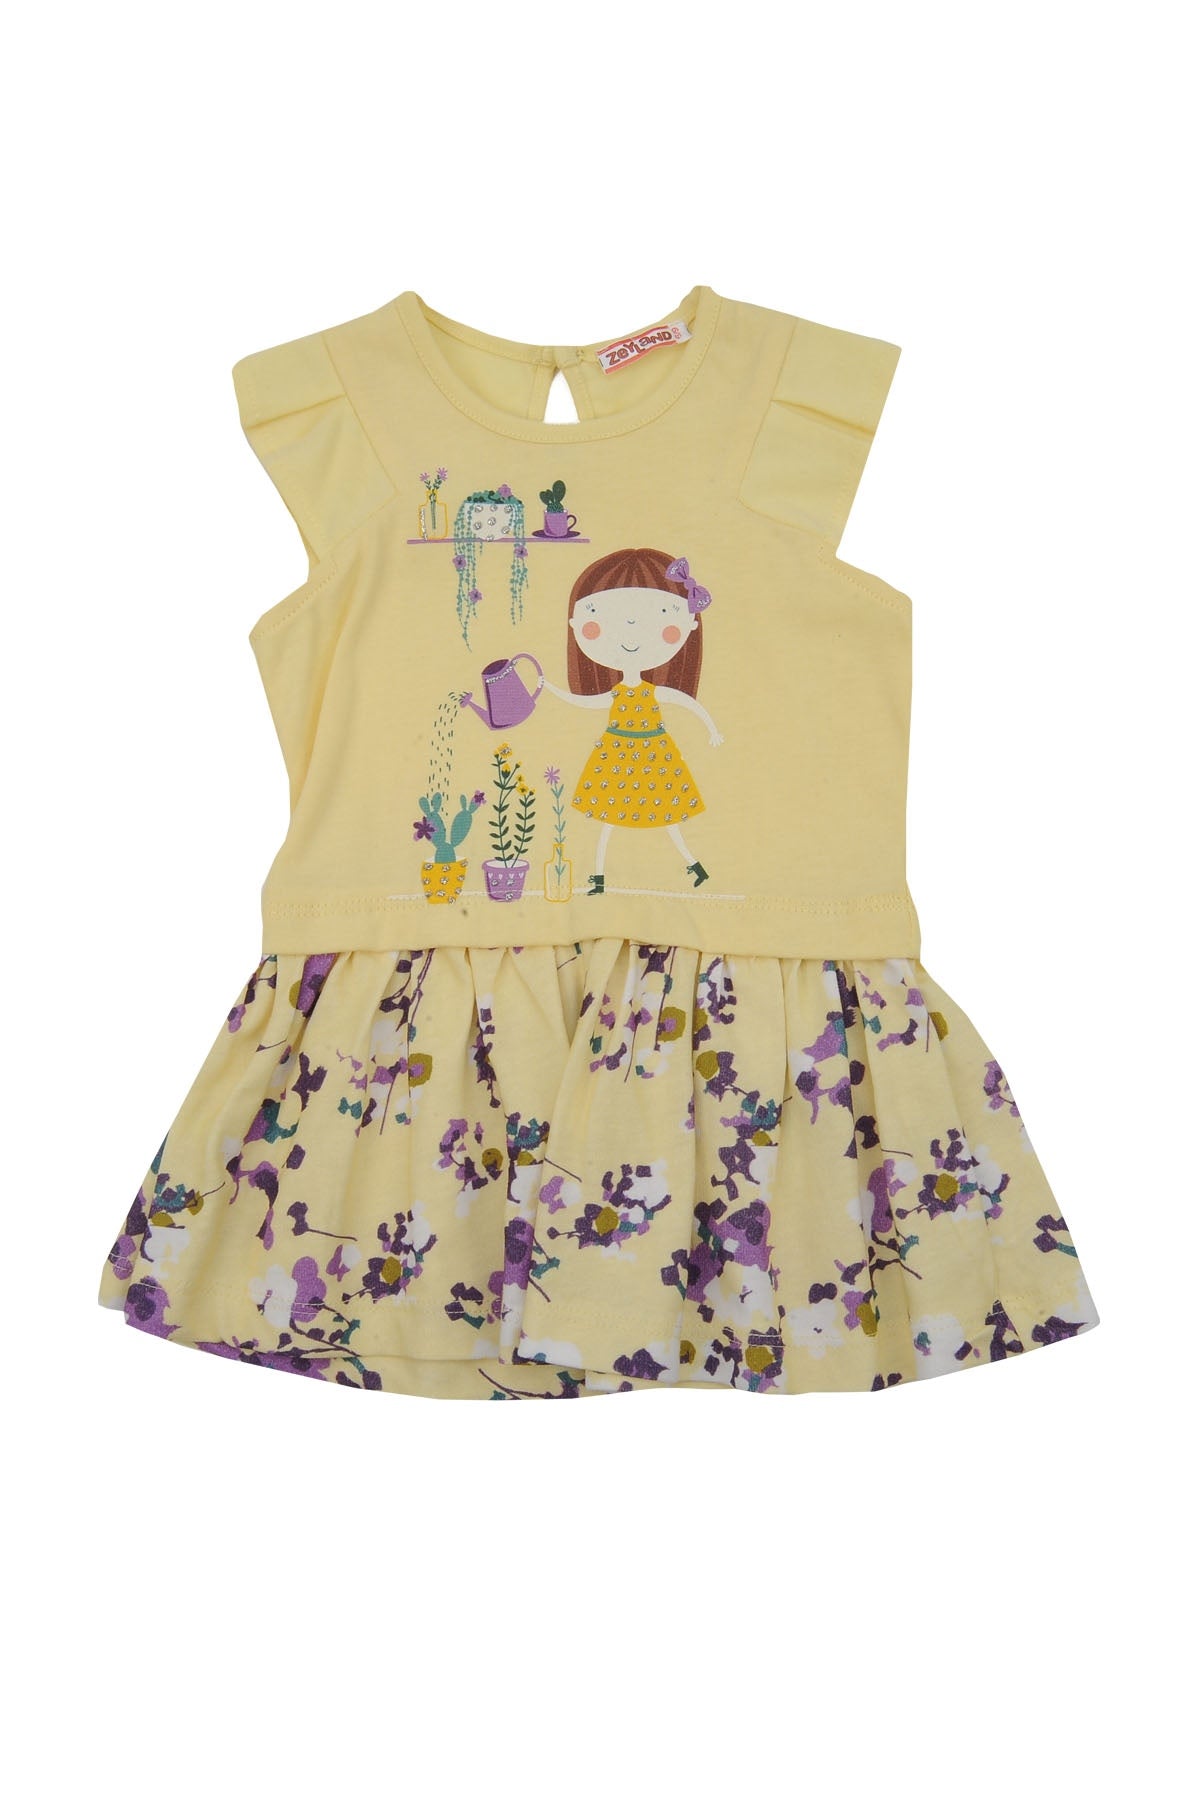 Kız Bebek Sarı Flowers Baskılı Elbise (6ay-4yaş)-0